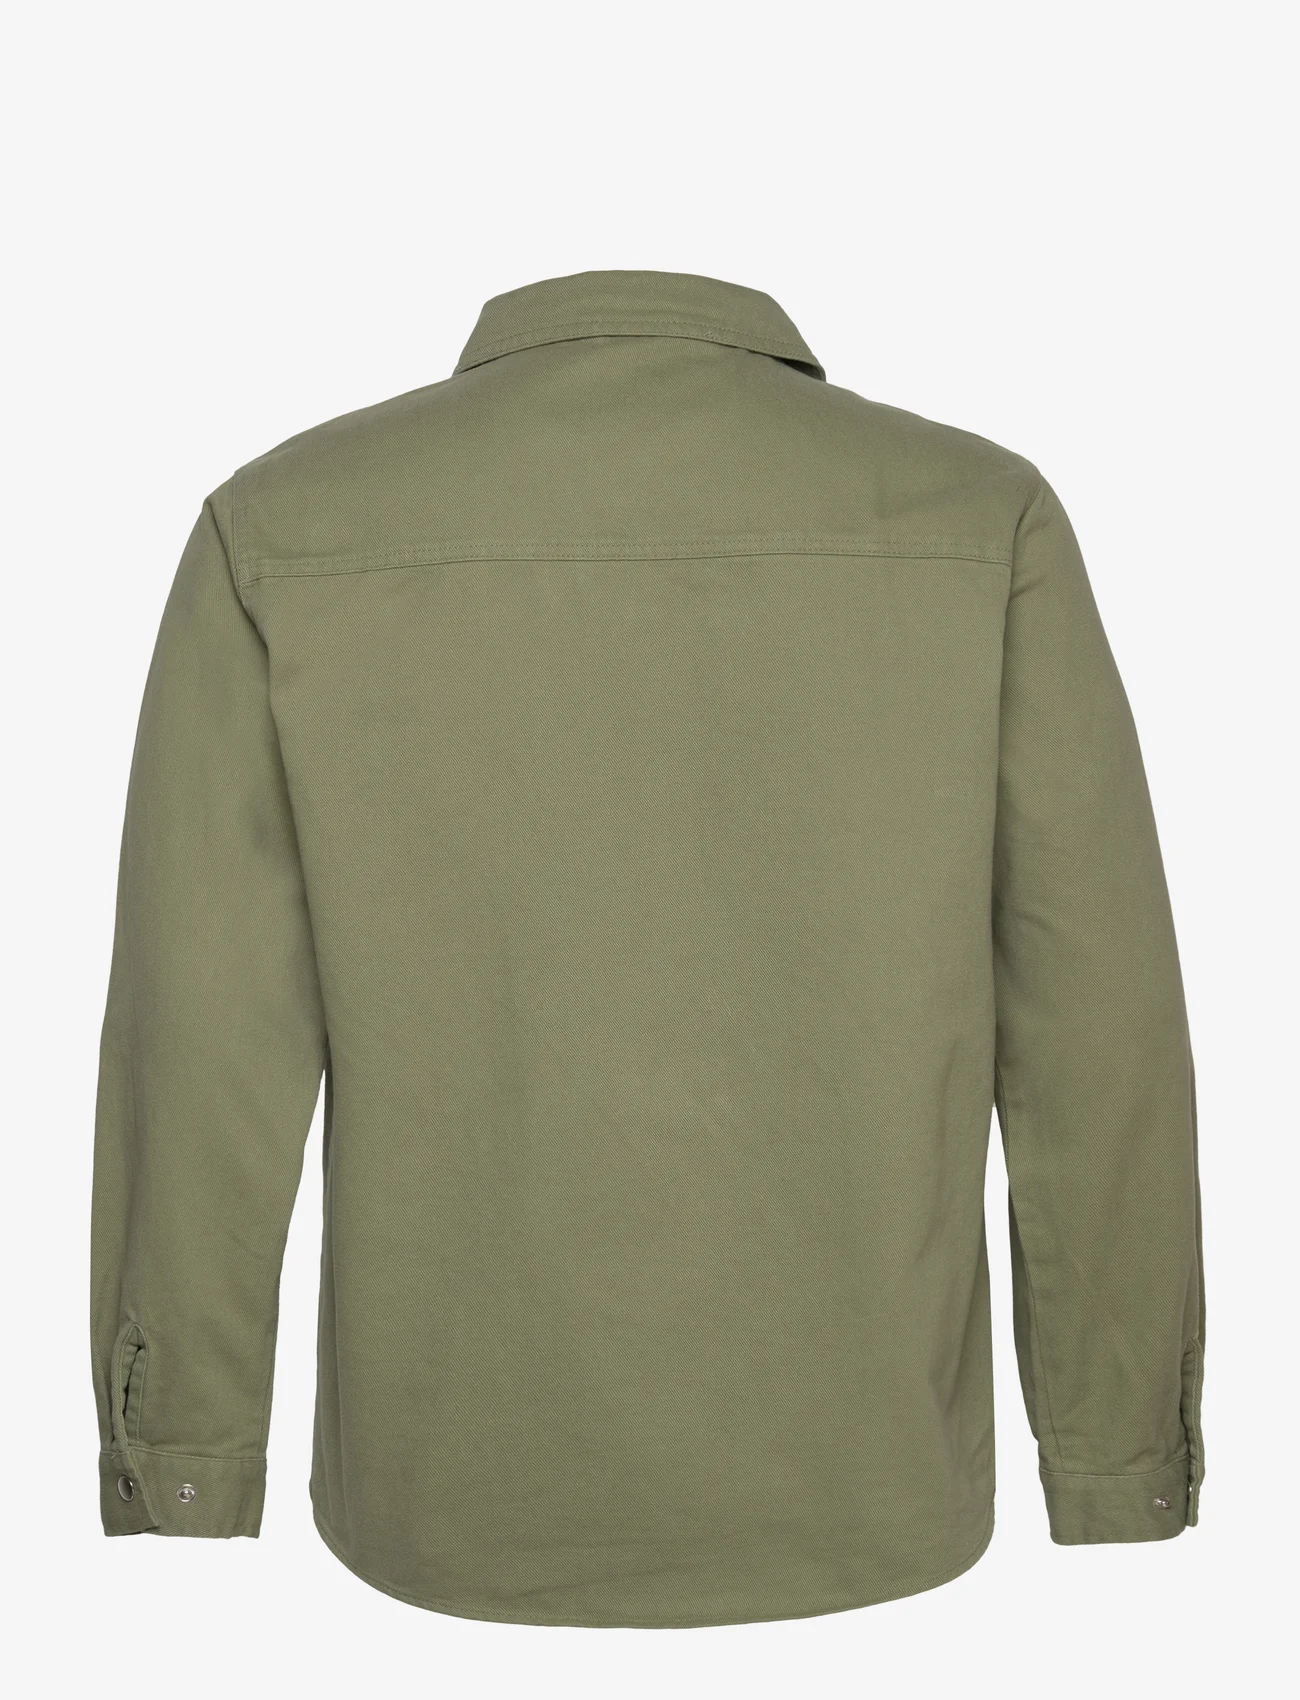 Revolution - Overshirt Zip - herren - lightgreen - 1